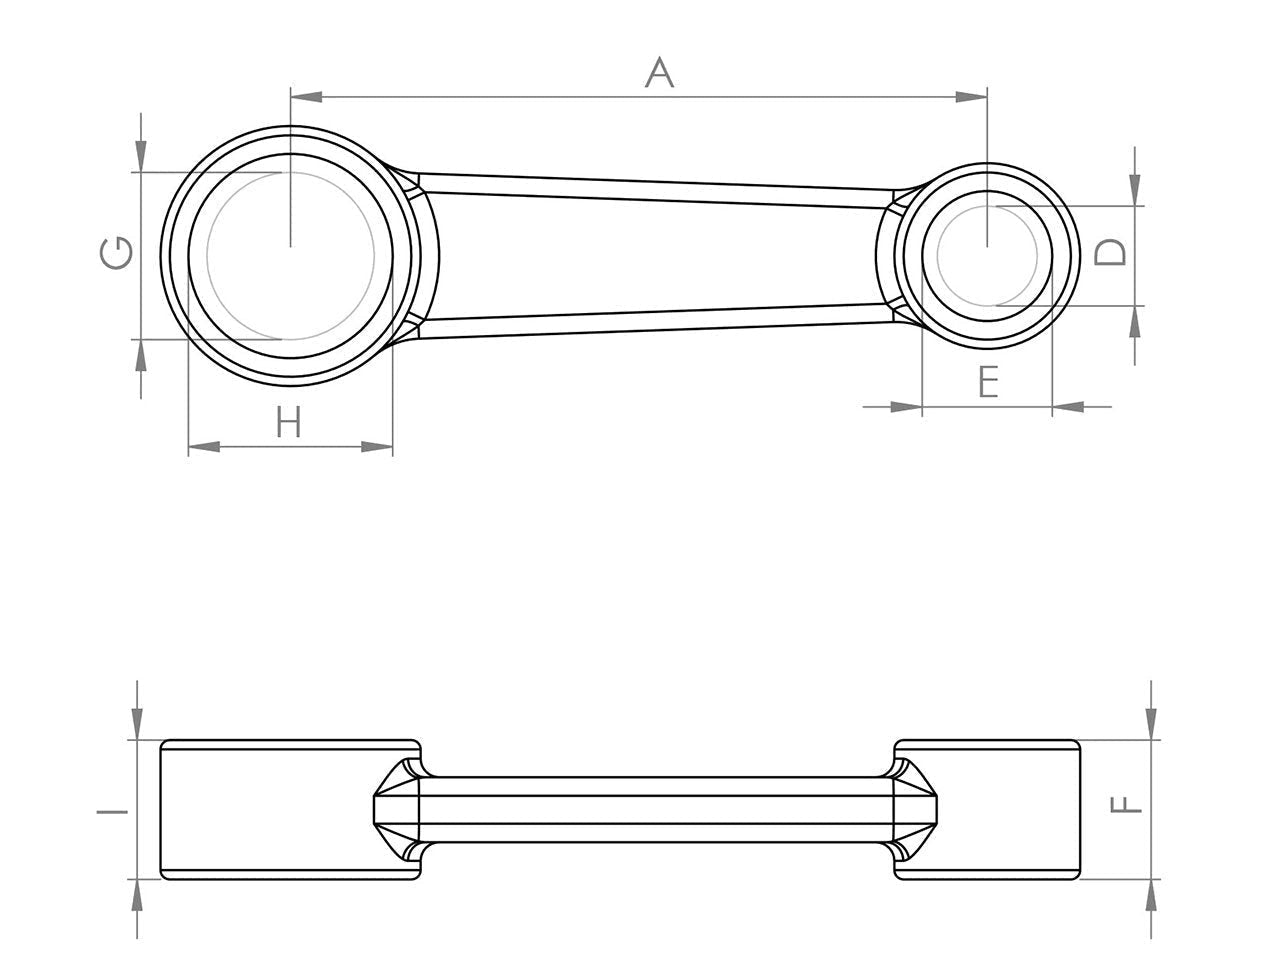 Zeichnung Barikit Pleuel für einen Yamaha Motor mit Bemaßung.